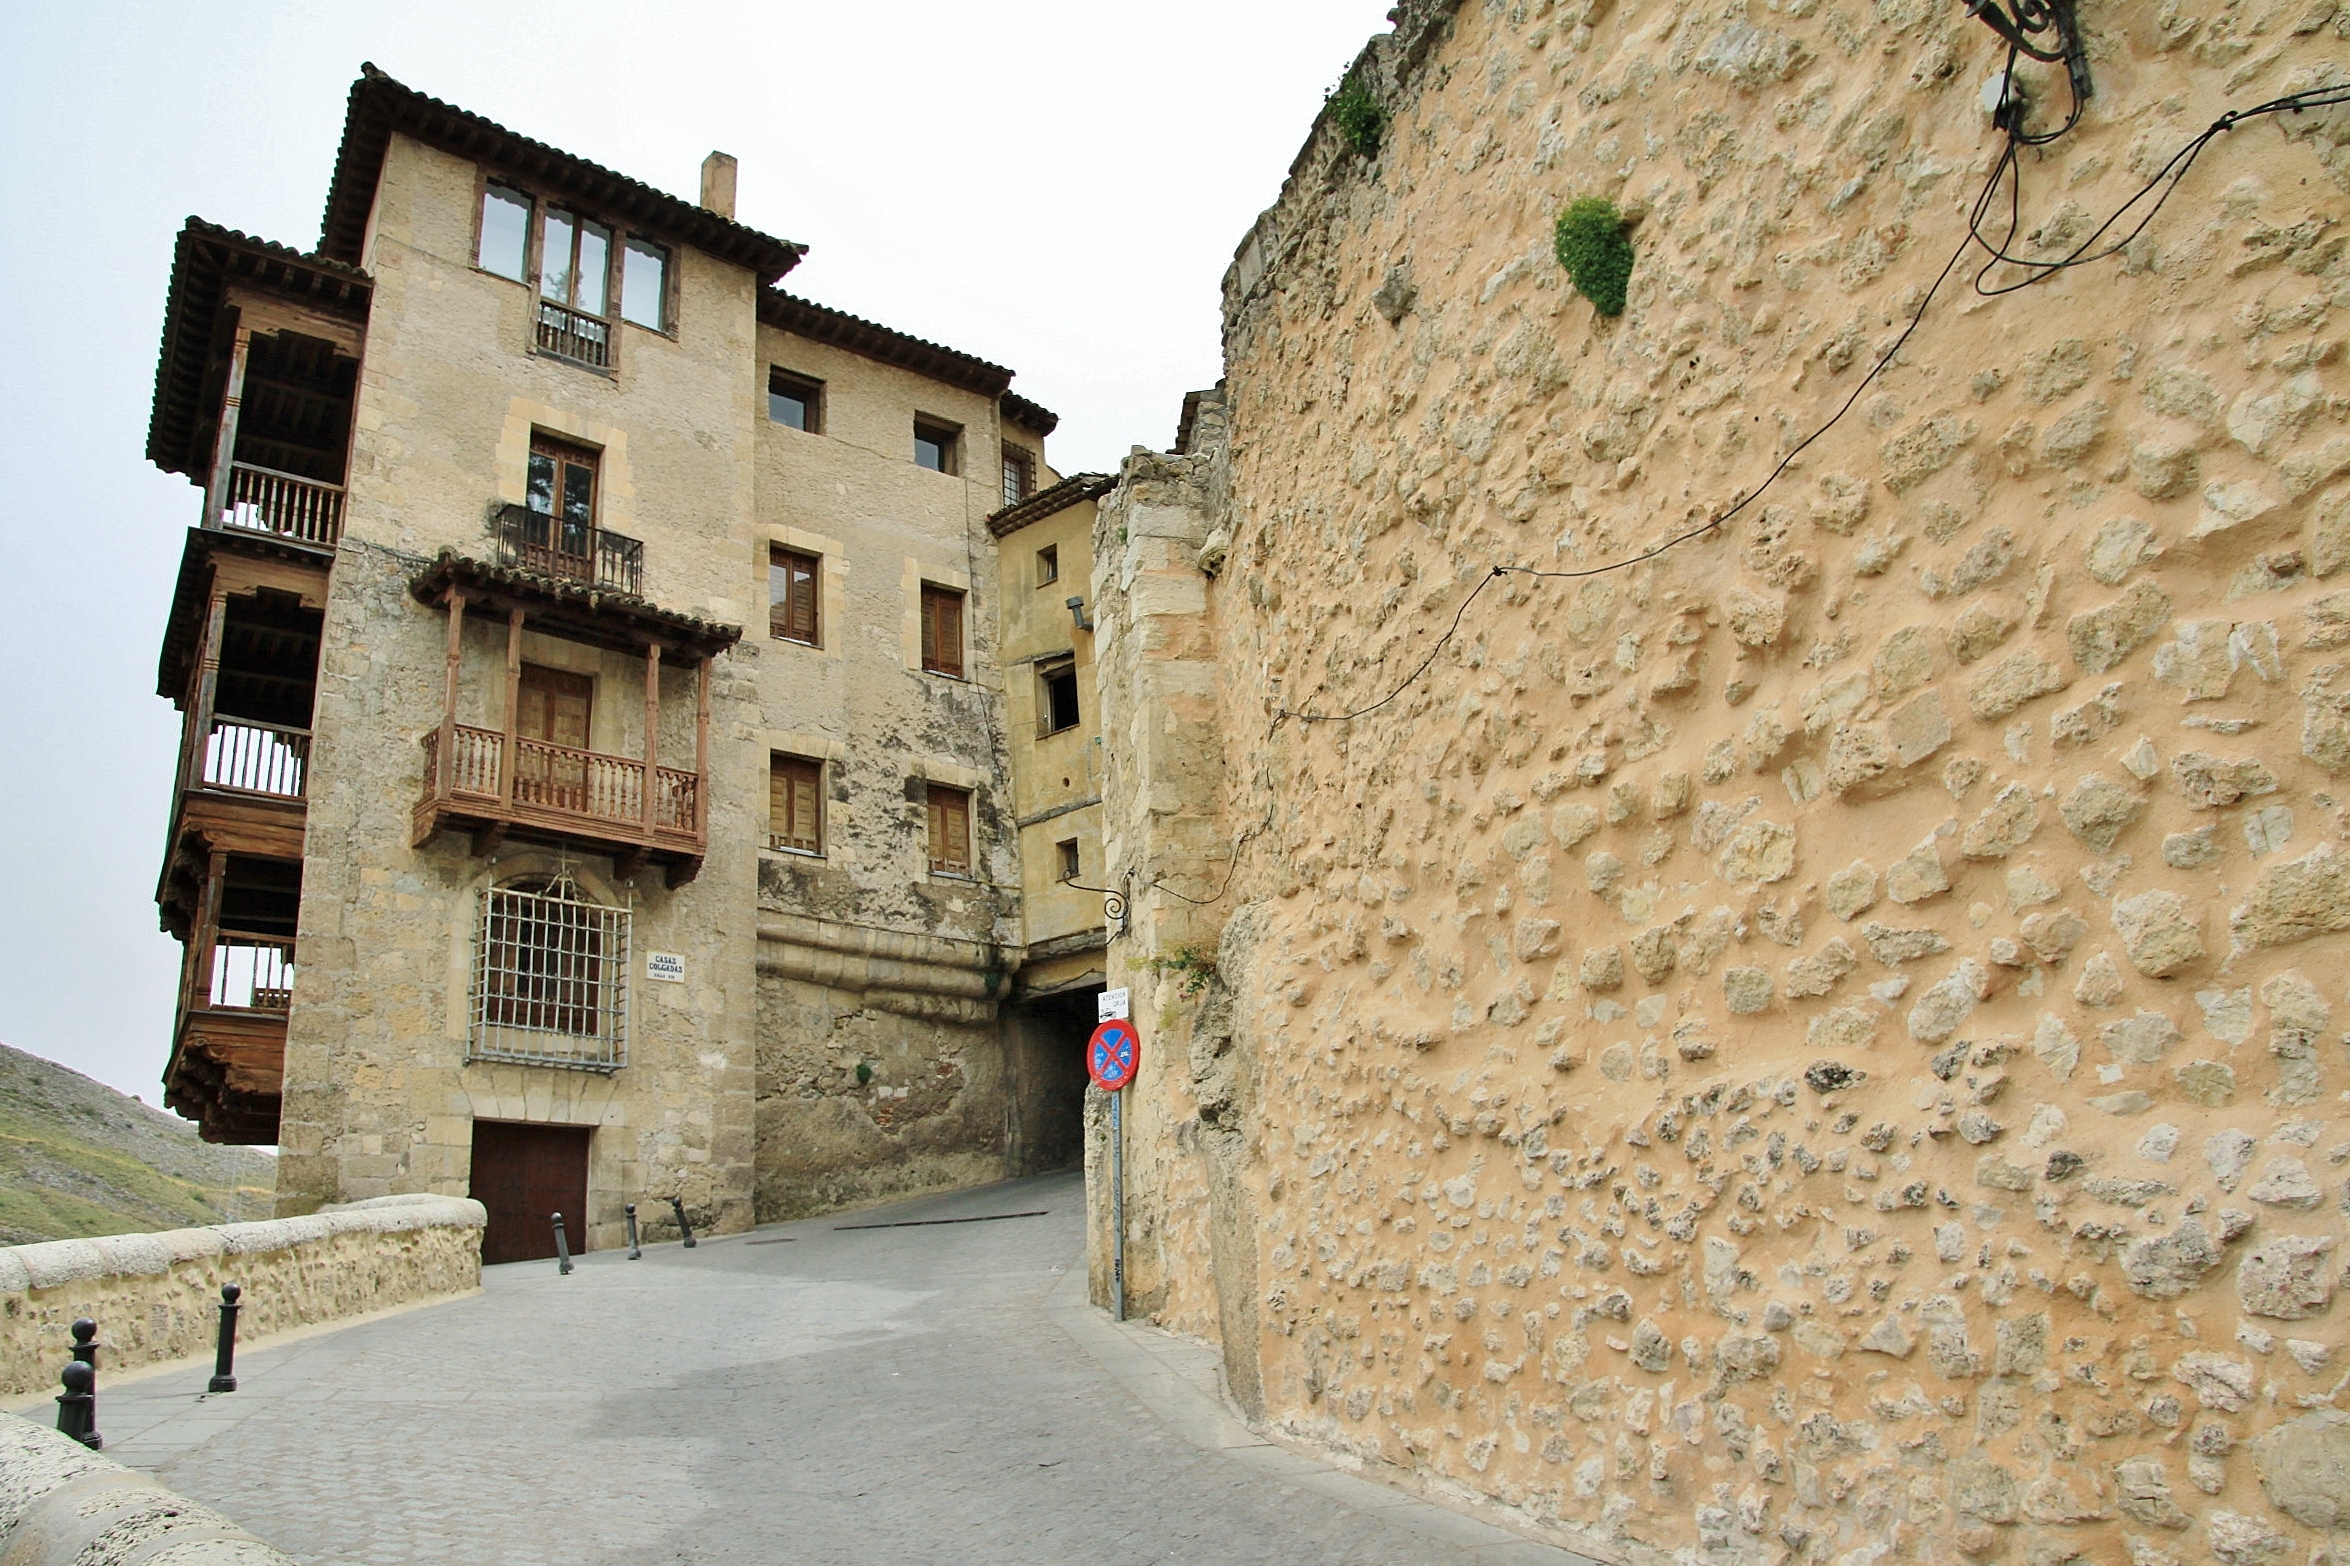 Foto: Casas colgadas - Cuenca (Castilla La Mancha), España